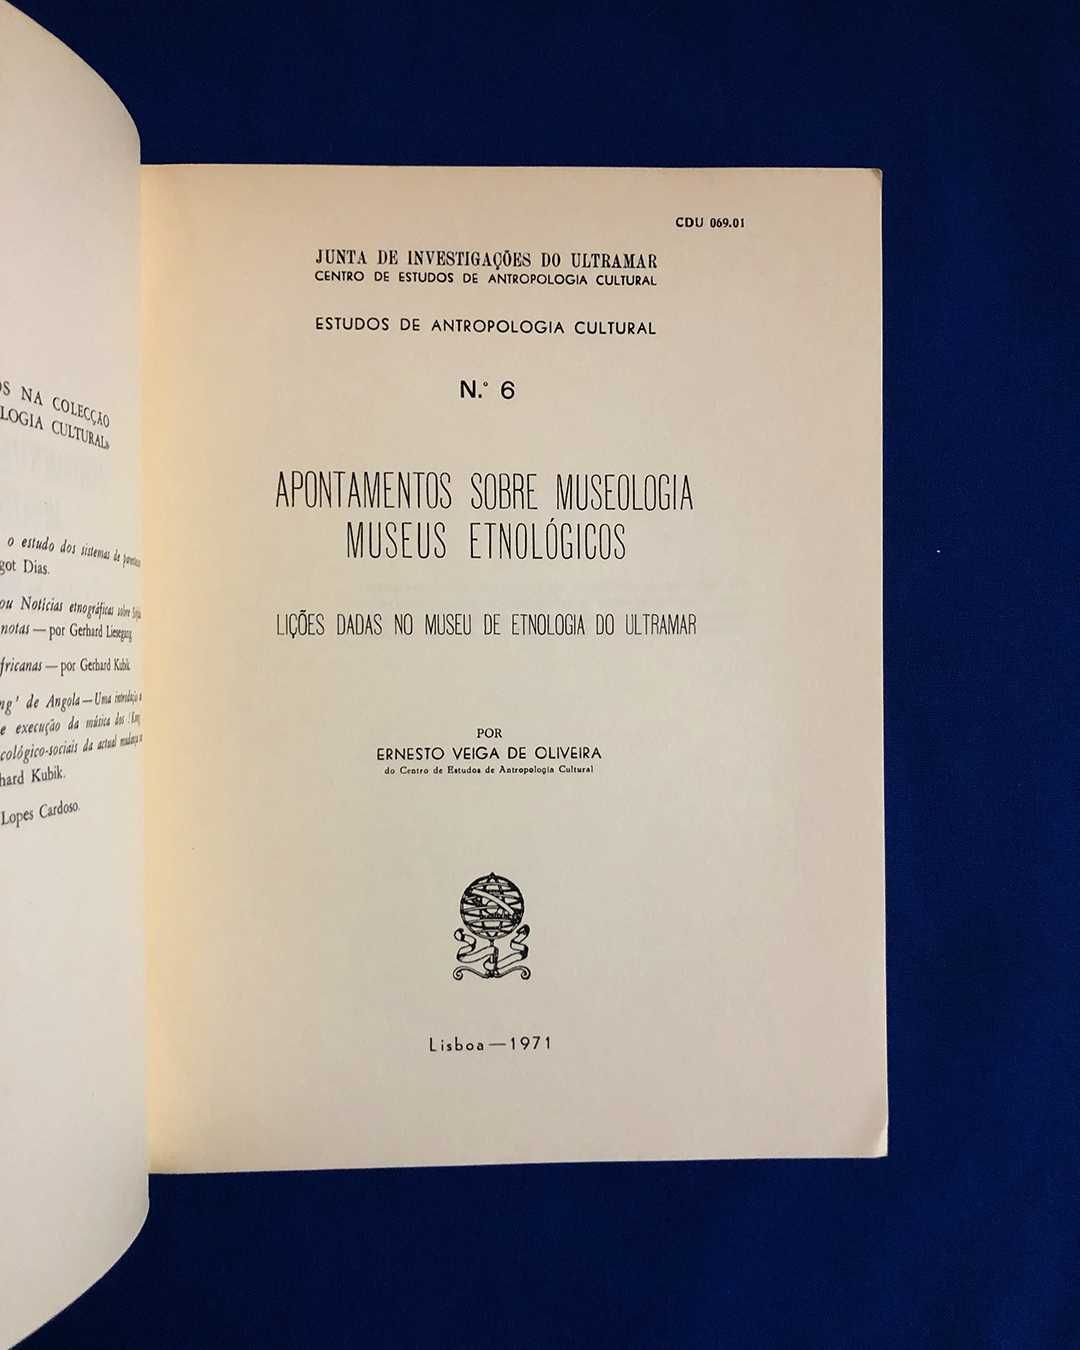 APONTAMENTOS sobre MUSEOLOGIA 1971 + Introd. à Técnica de MUSEUS 1946